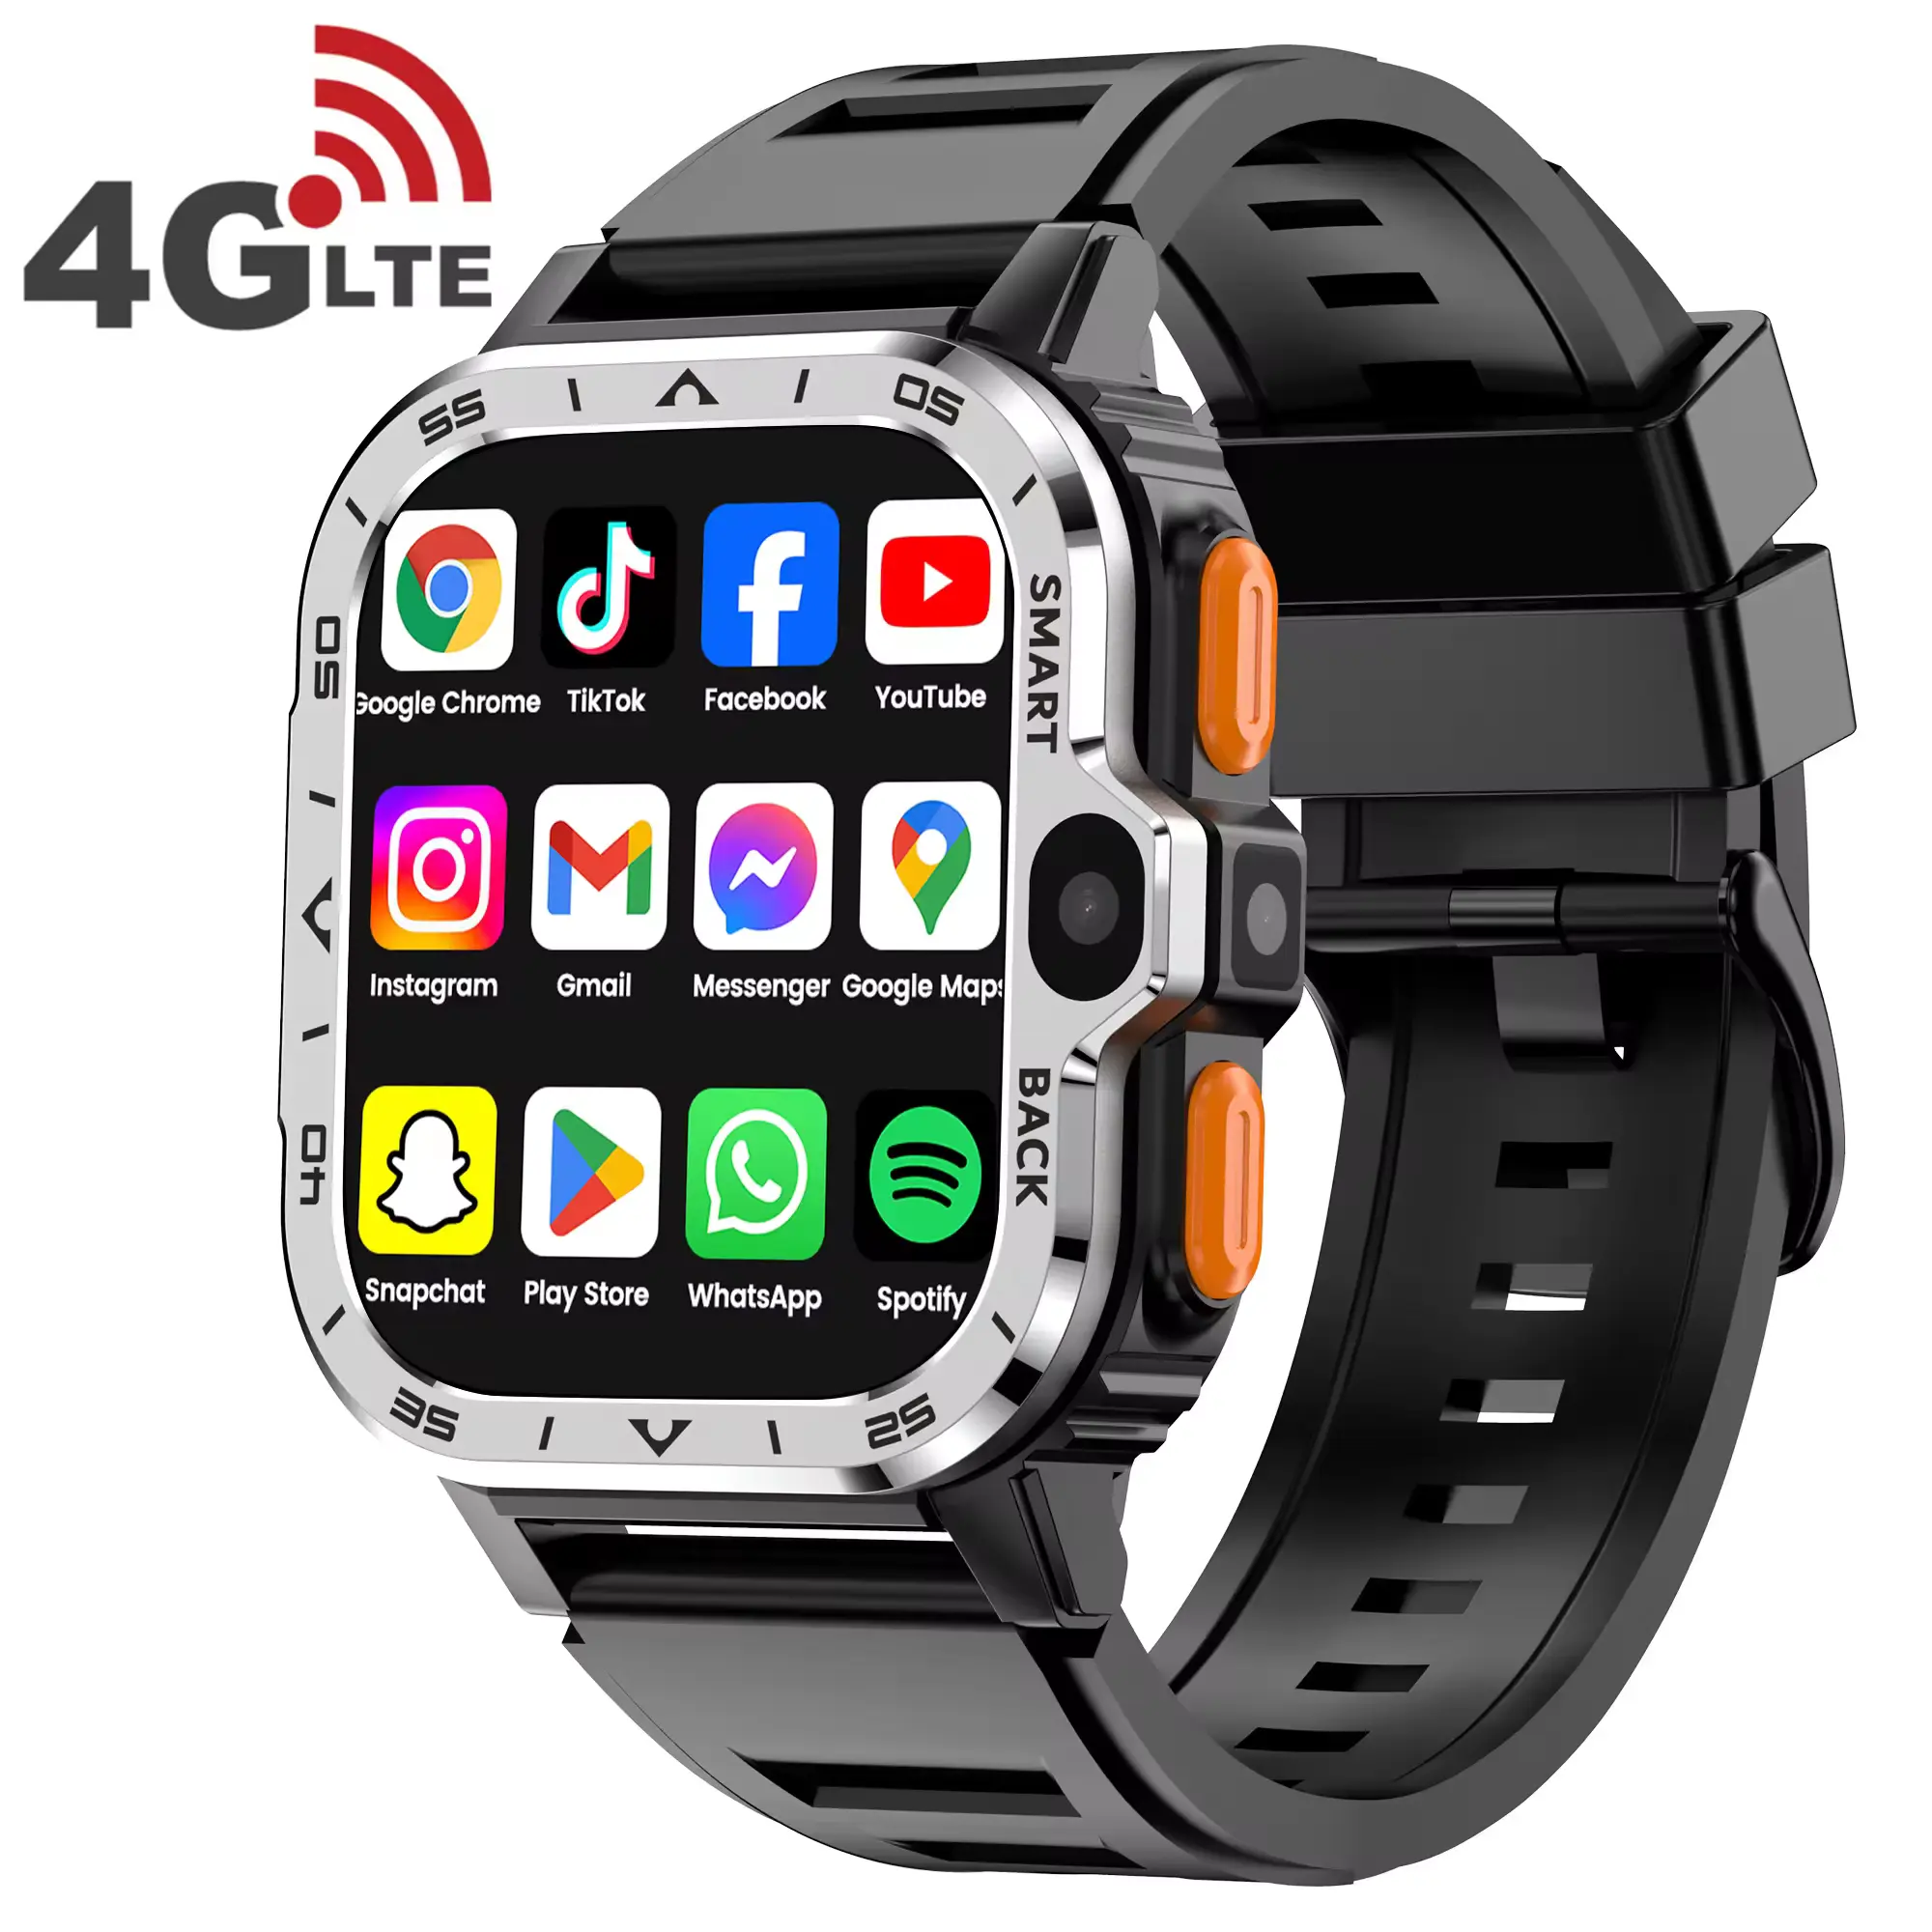 S8 Siêu 4G Android Điện Thoại Smartwatch S8 Siêu S9 Sim Thẻ Di Động GPS Wifi Dual Video Máy Ảnh Người Đàn Ông Thời Trang Hombre Pgd Thông Minh Đồng Hồ